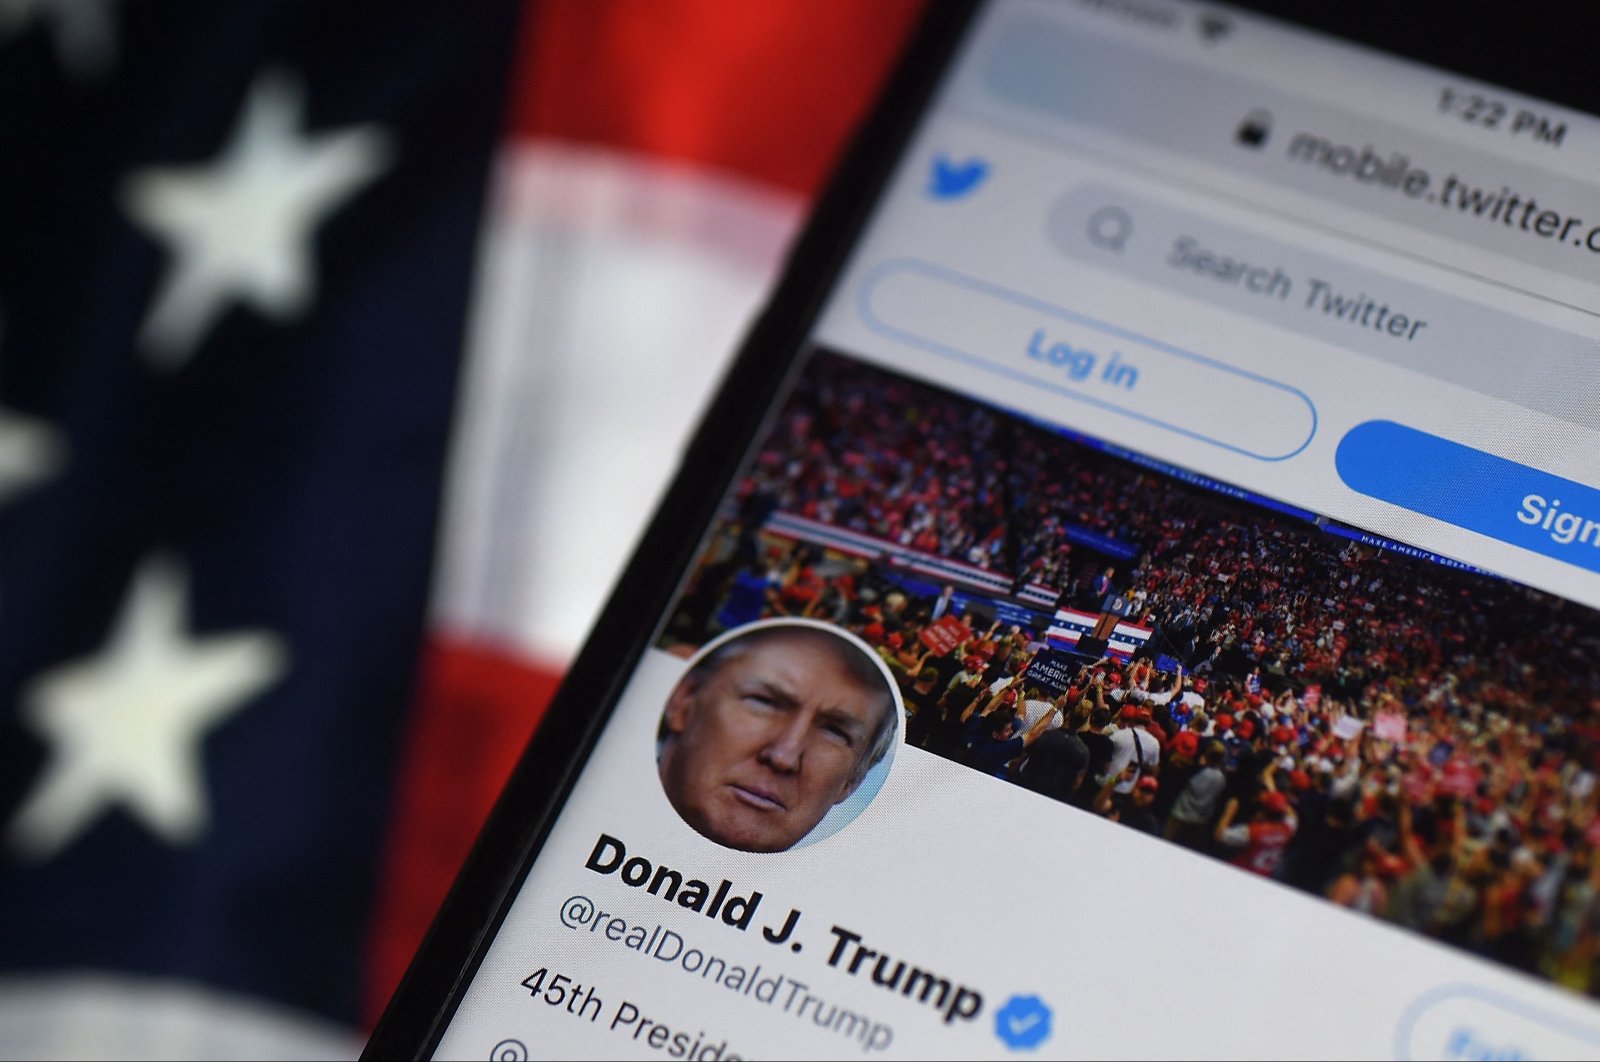 Trump menolak Twitter setelah Musk mengumumkan pengaktifan kembali akunnya